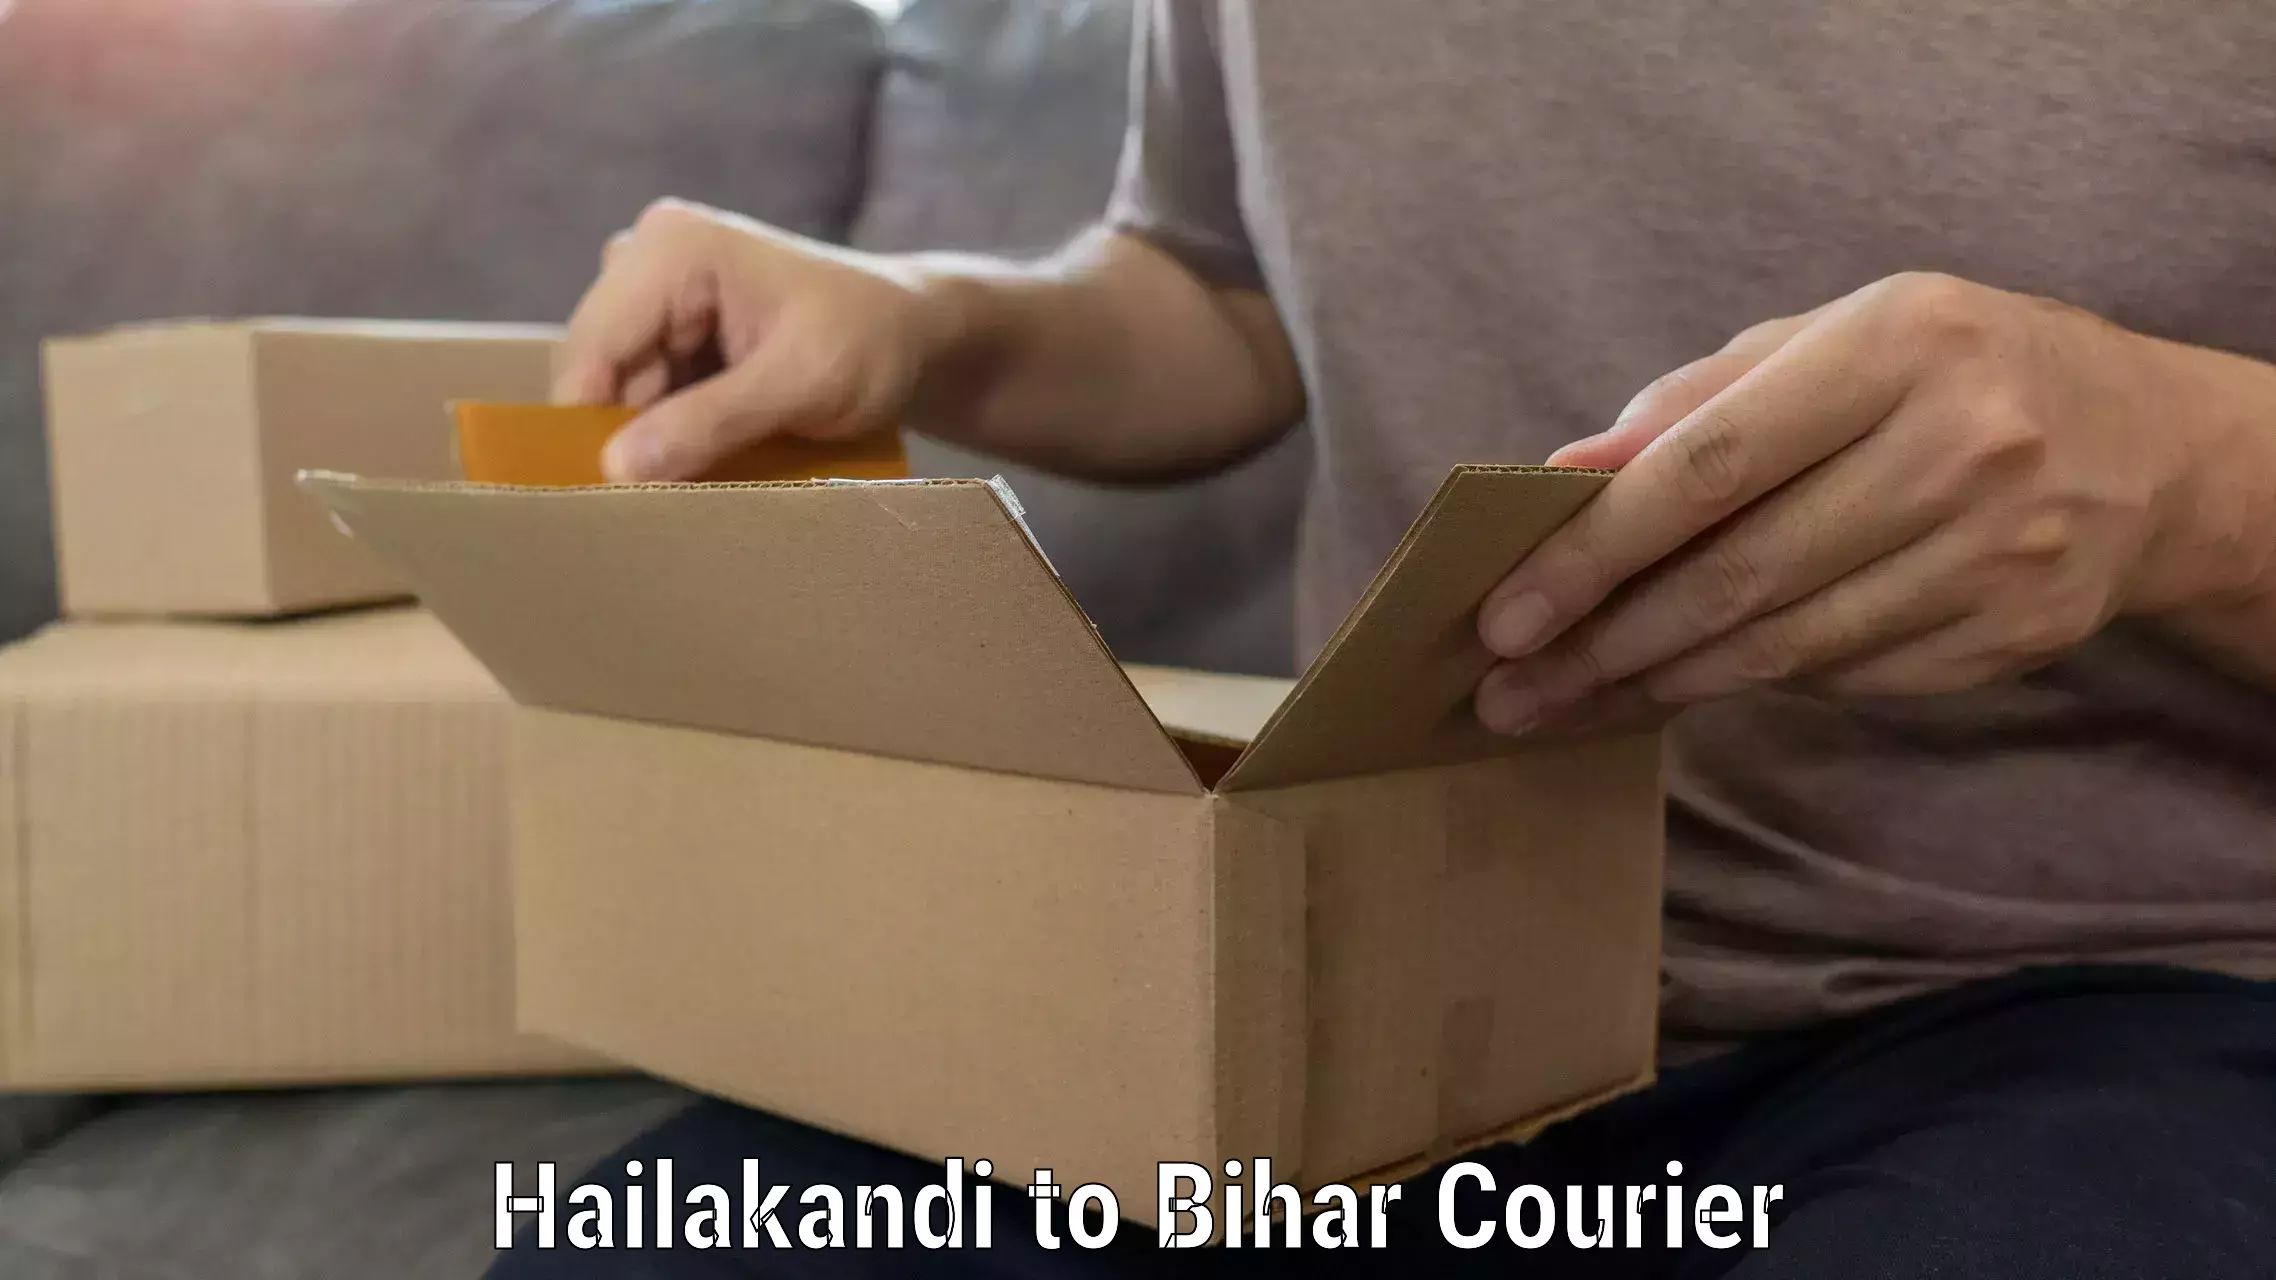 Household goods movers and packers Hailakandi to Bihar